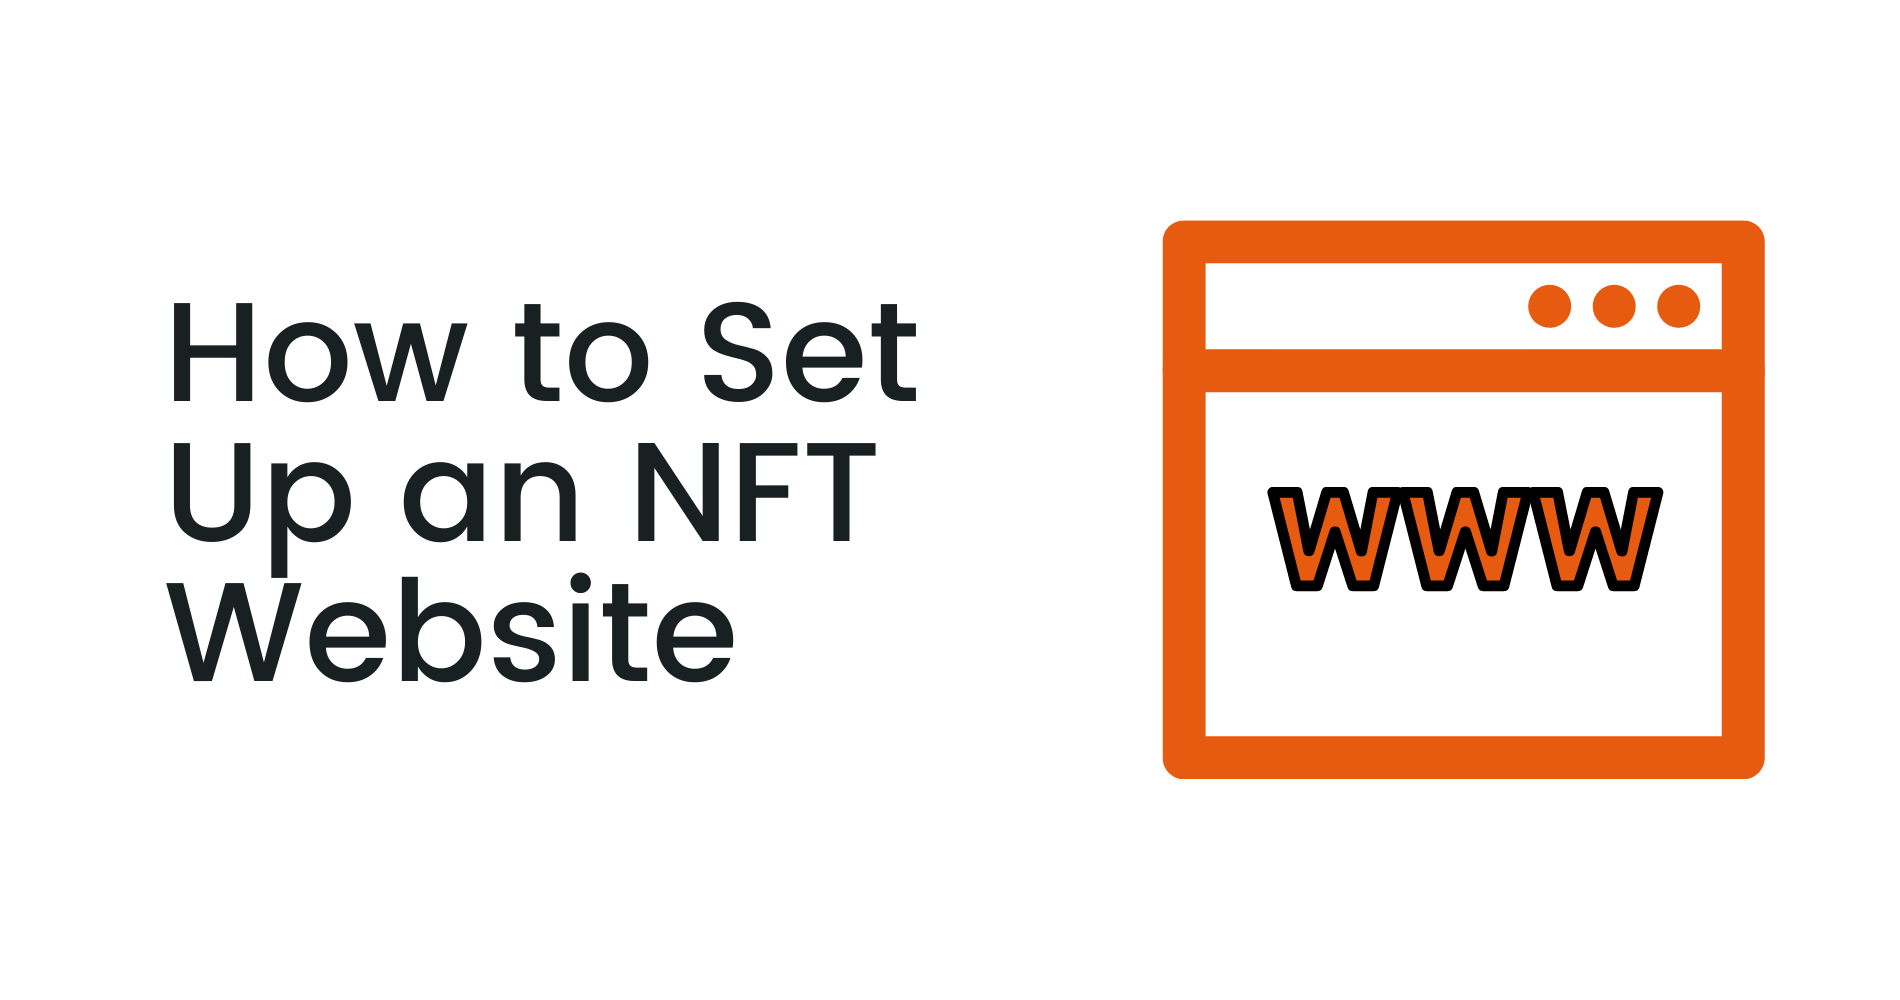 How to set up an NFT website